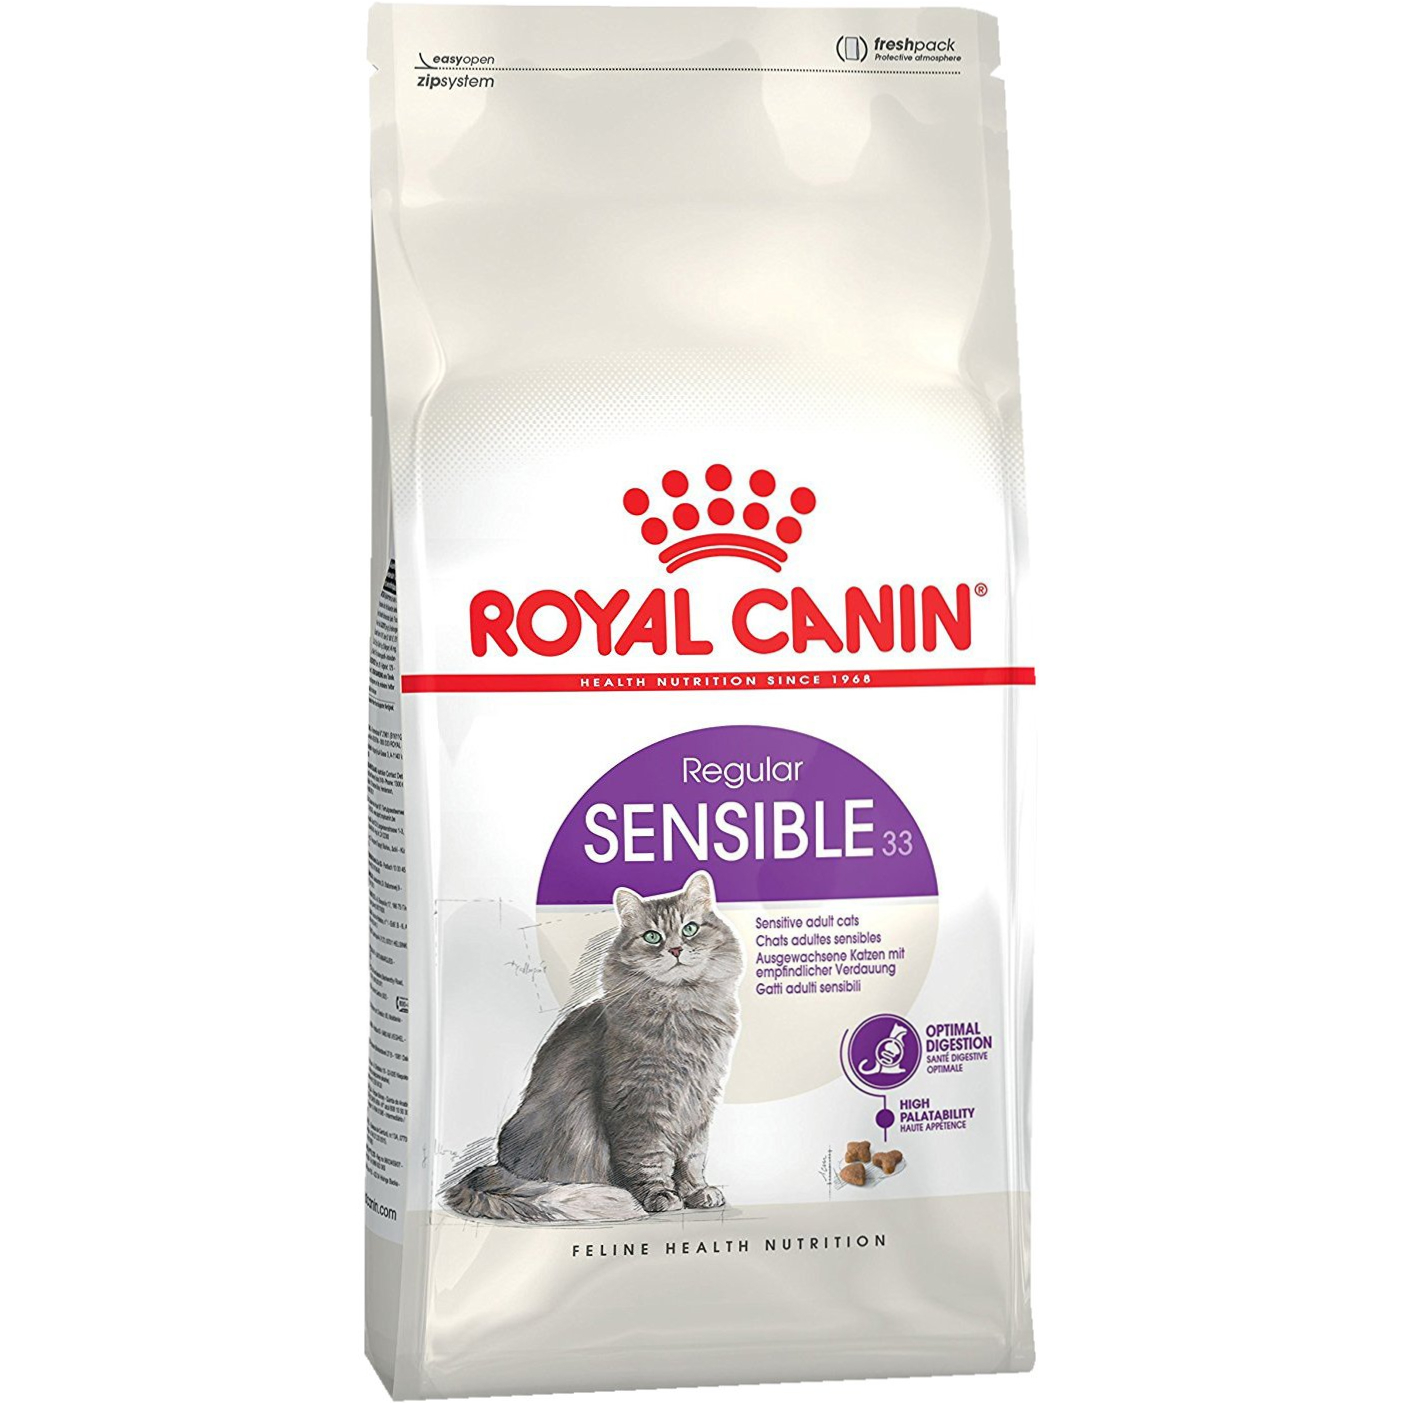 цена Корм для кошек Royal Canin Sensible 33 с чувствительным пищеварением 1,2 кг